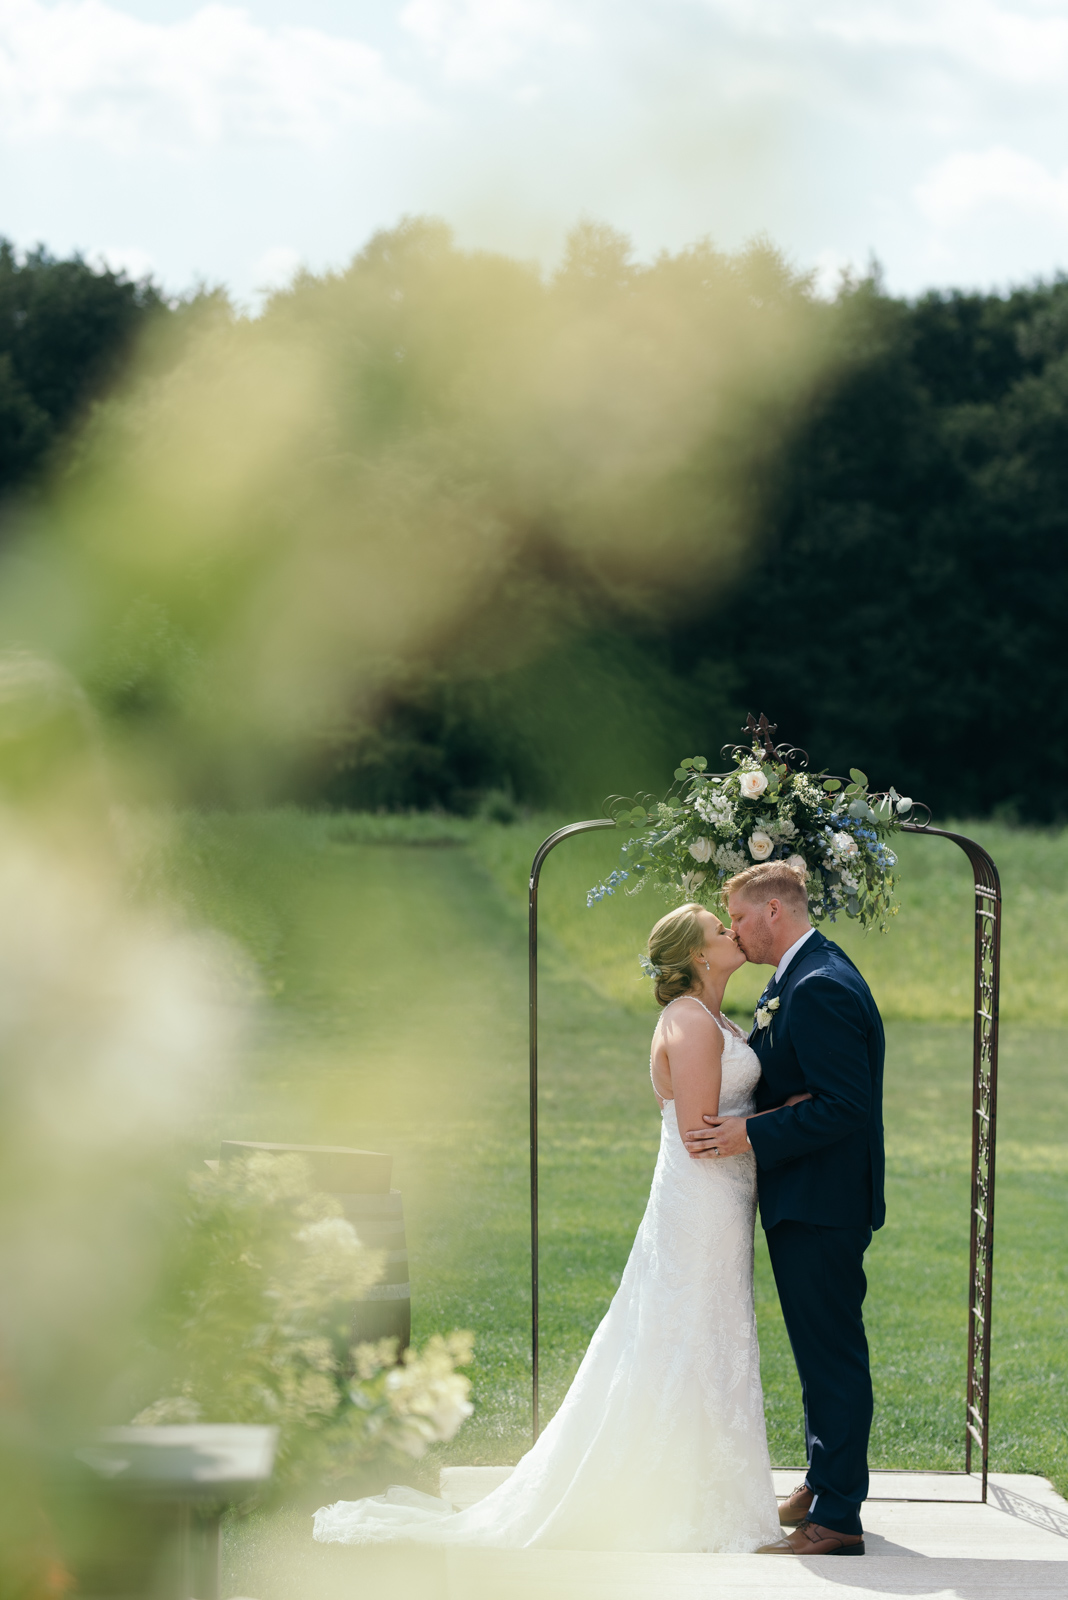 Cedar Rapids Wedding | Ashton Hill Farm Wedding Venue | Alex + Andie